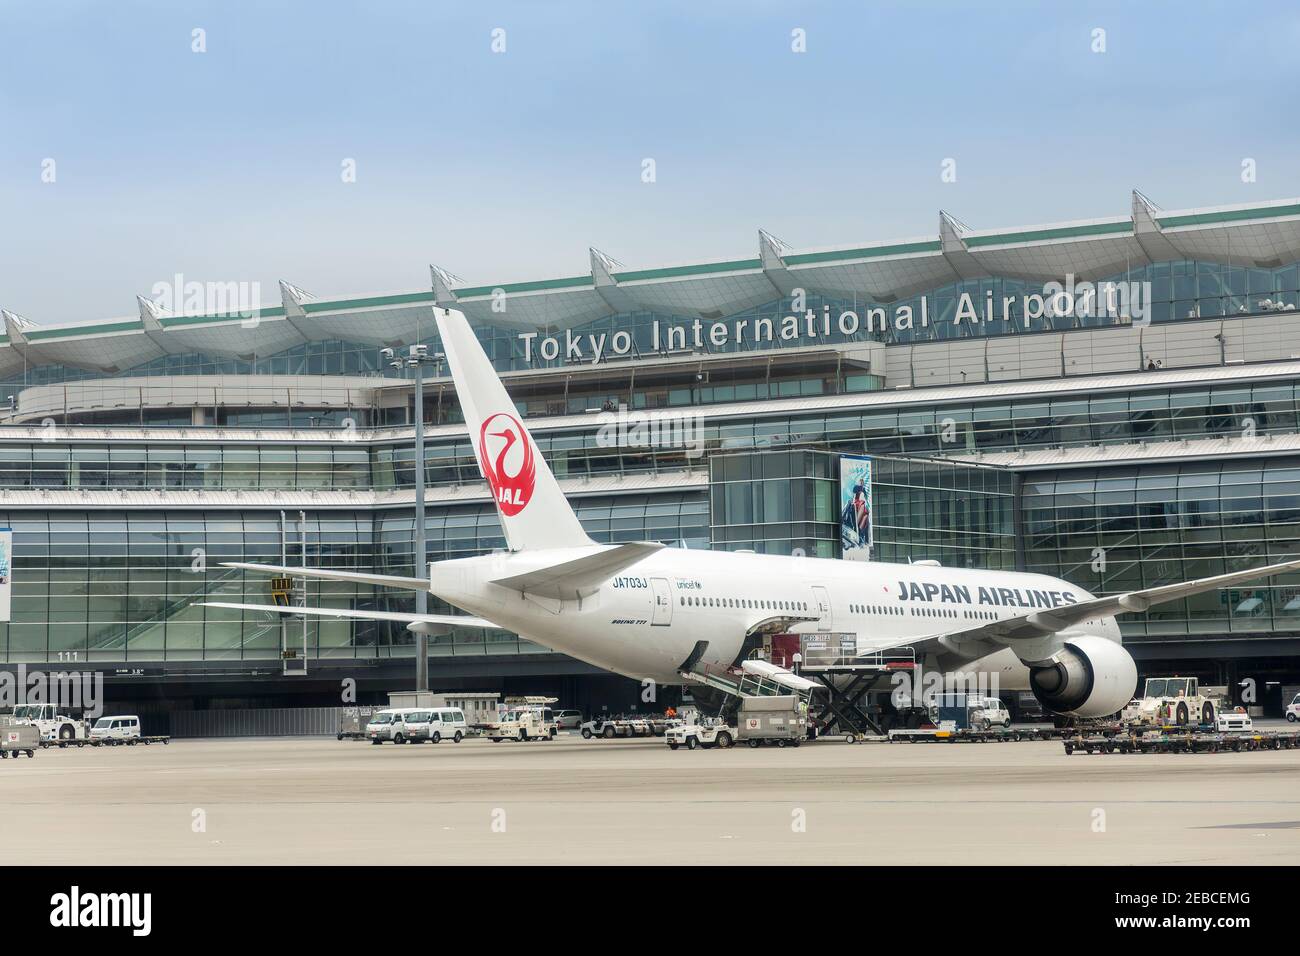 Japan Airlines Boeing 777 presso il terminal dell'aeroporto internazionale di Tokyo, Giappone Foto Stock